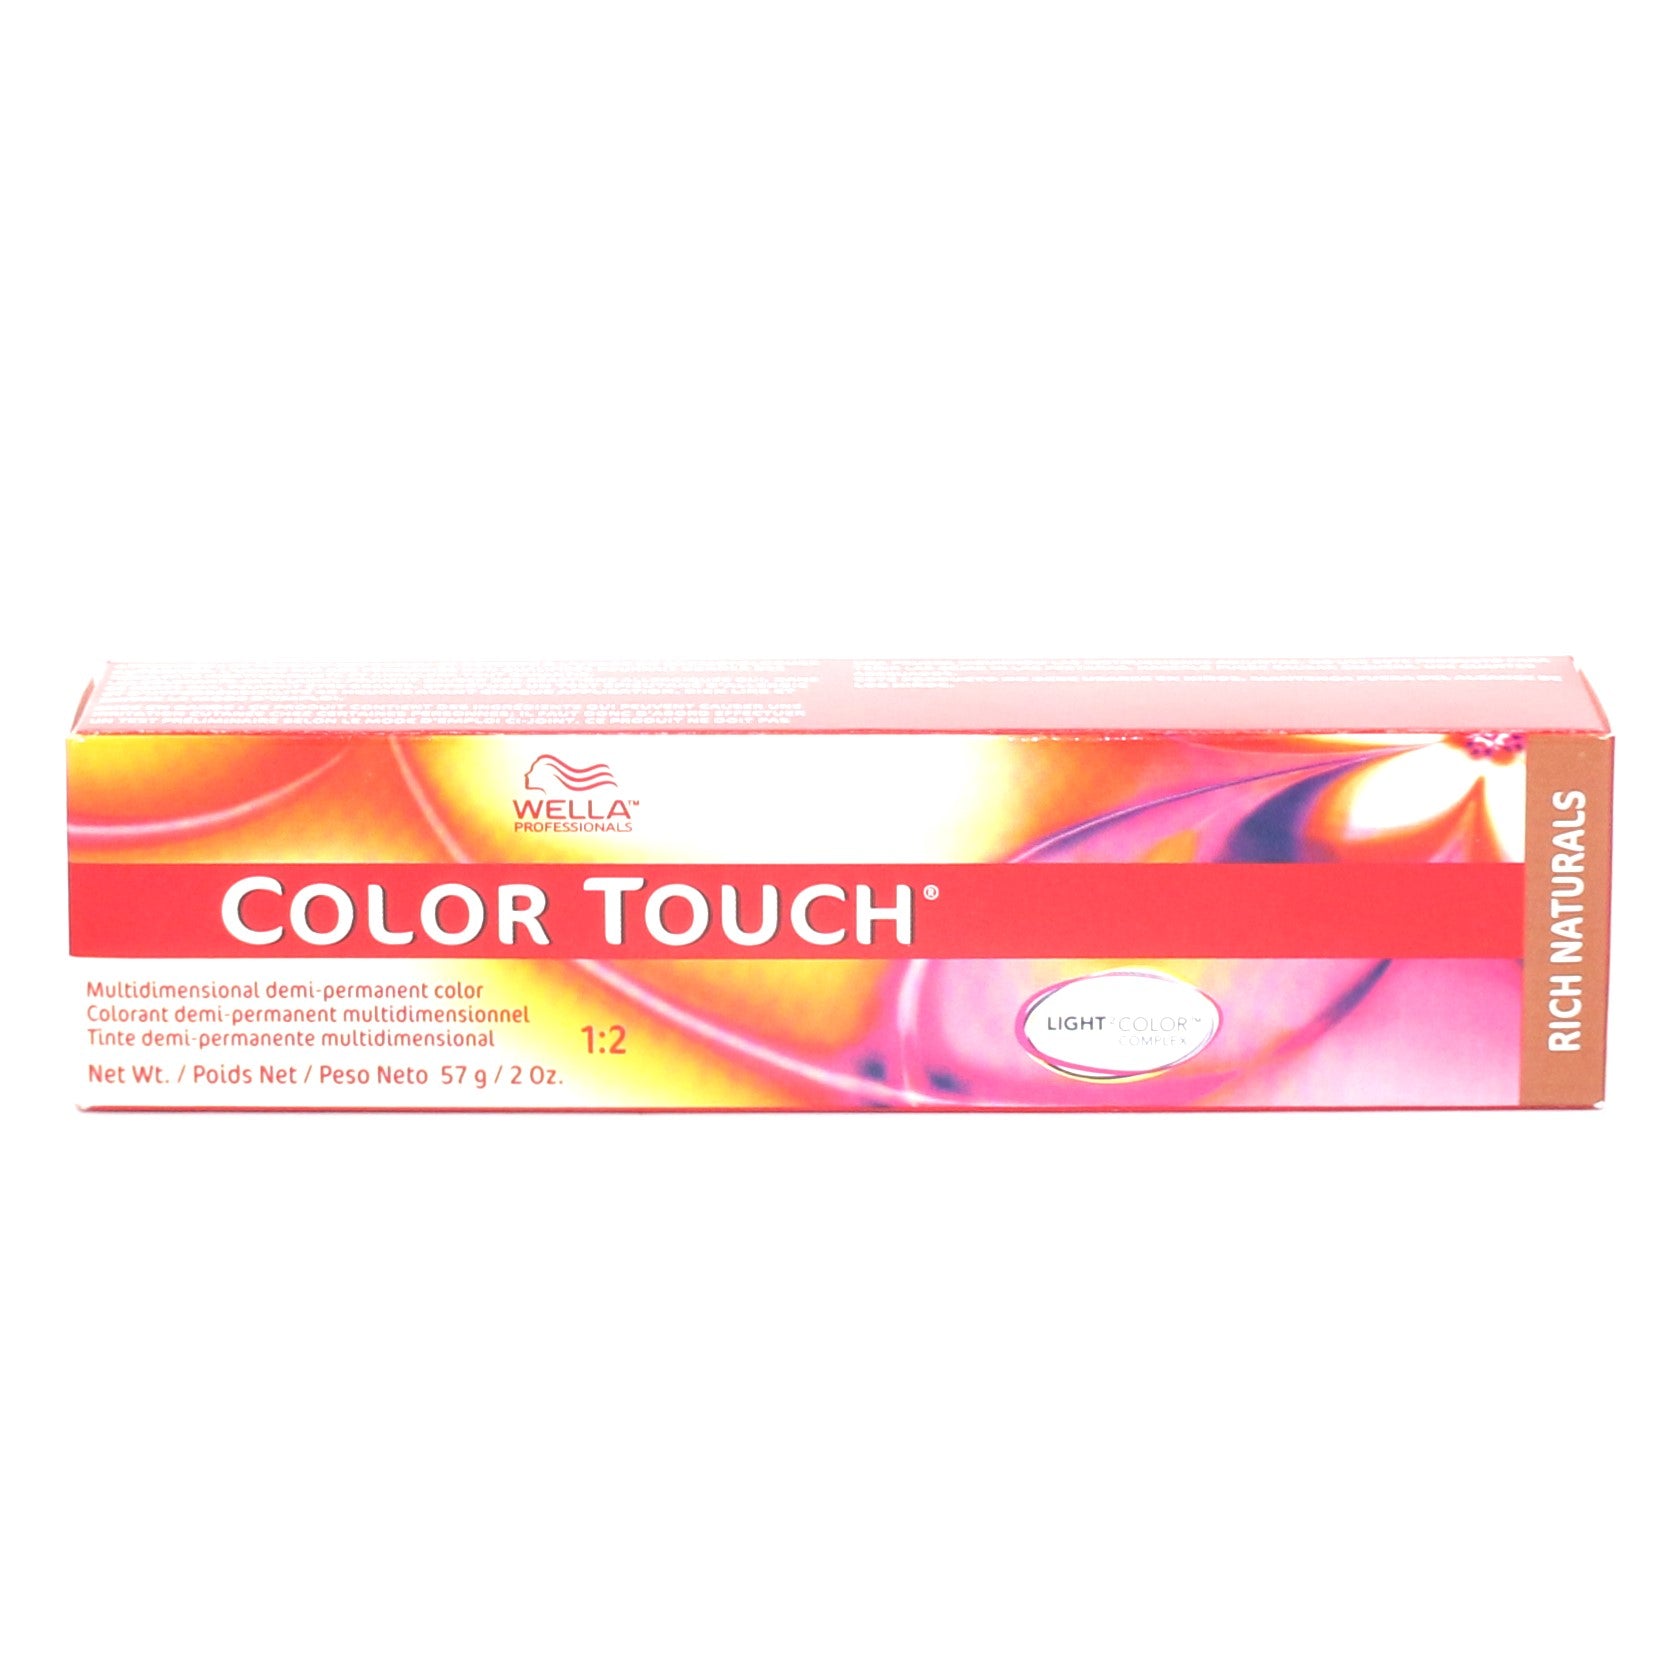 Wella Color Touch Multidimensional Demi-Permanent Color Rich Naturals 2 oz